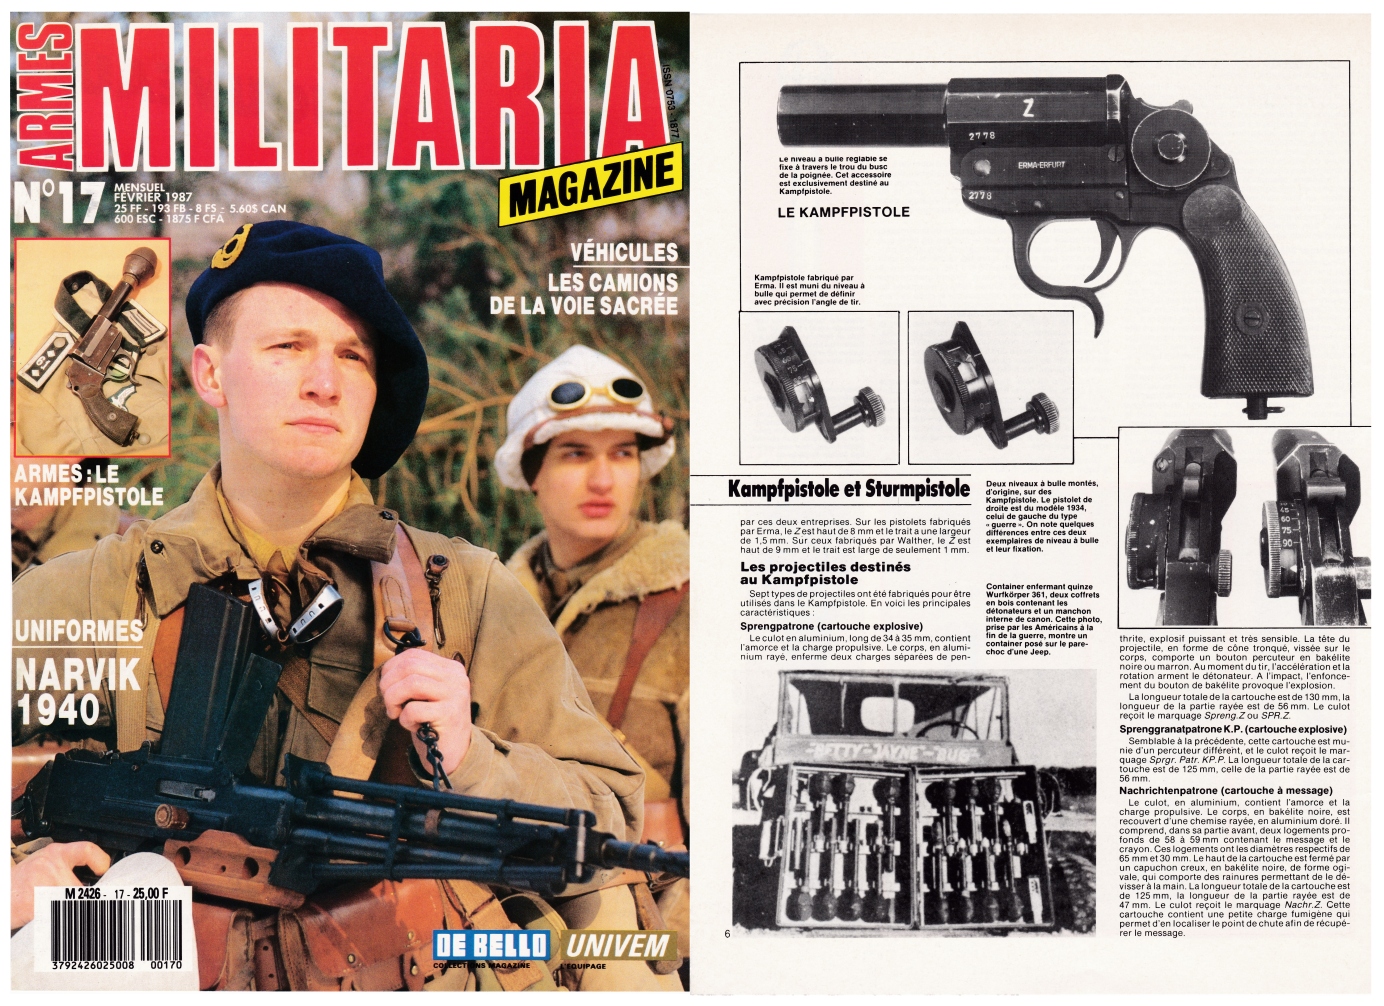 Les pistolets allemands Kampfpistole et Sturmpistole ont fait l'objet d'une publication sur 6 pages dans le magazine Militaria N°17 (février 1987).